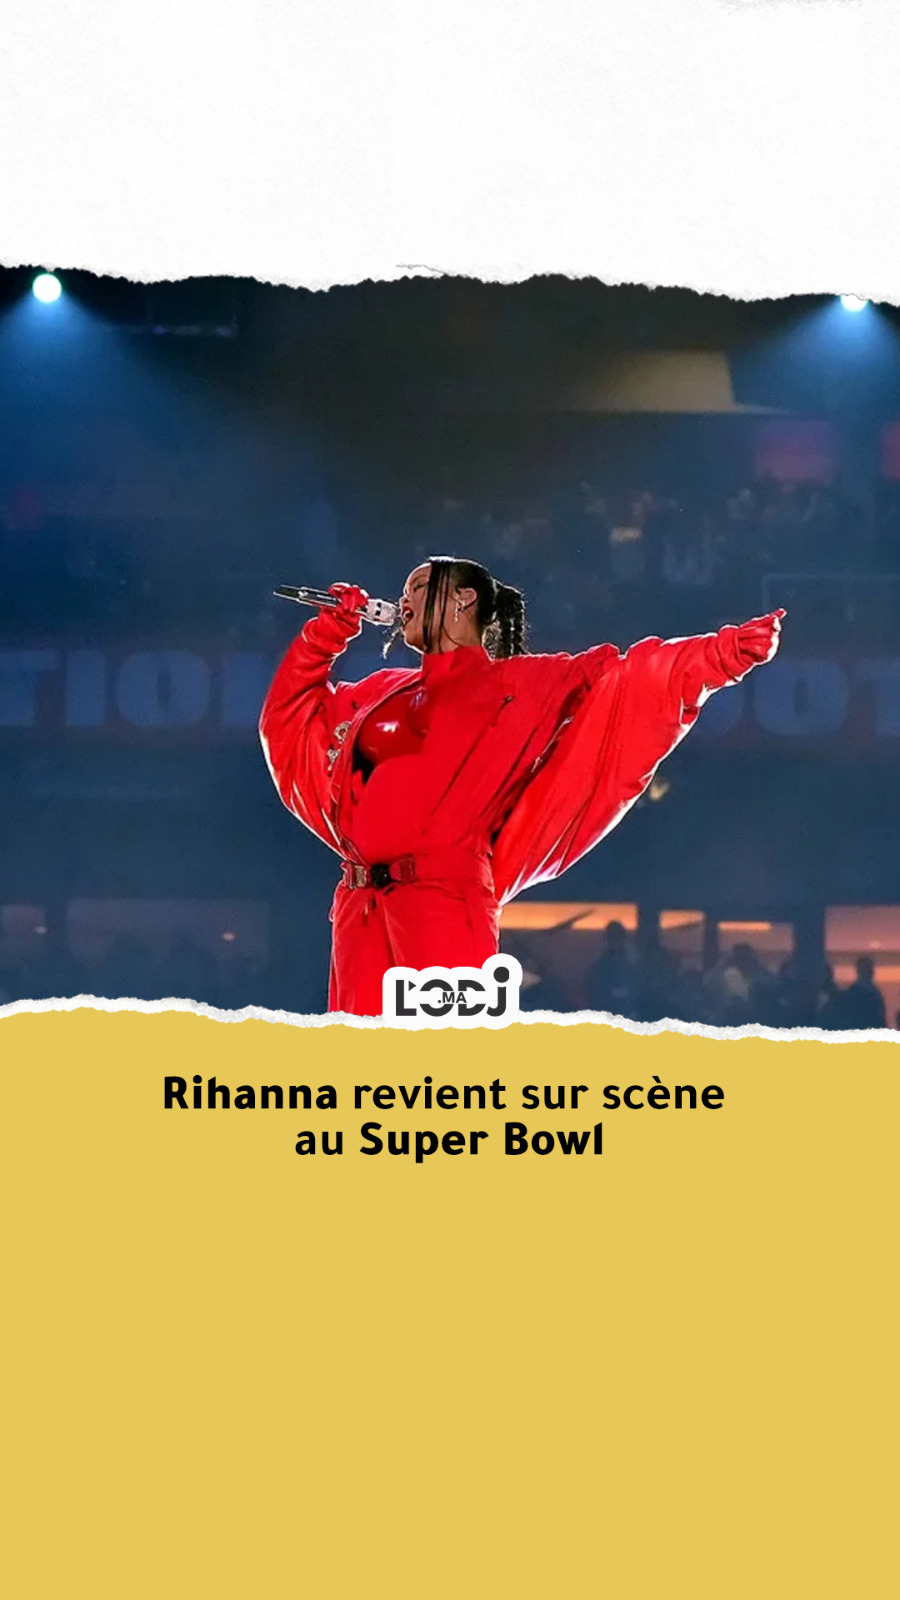 Rihanna revient sur scène au Super Bowl